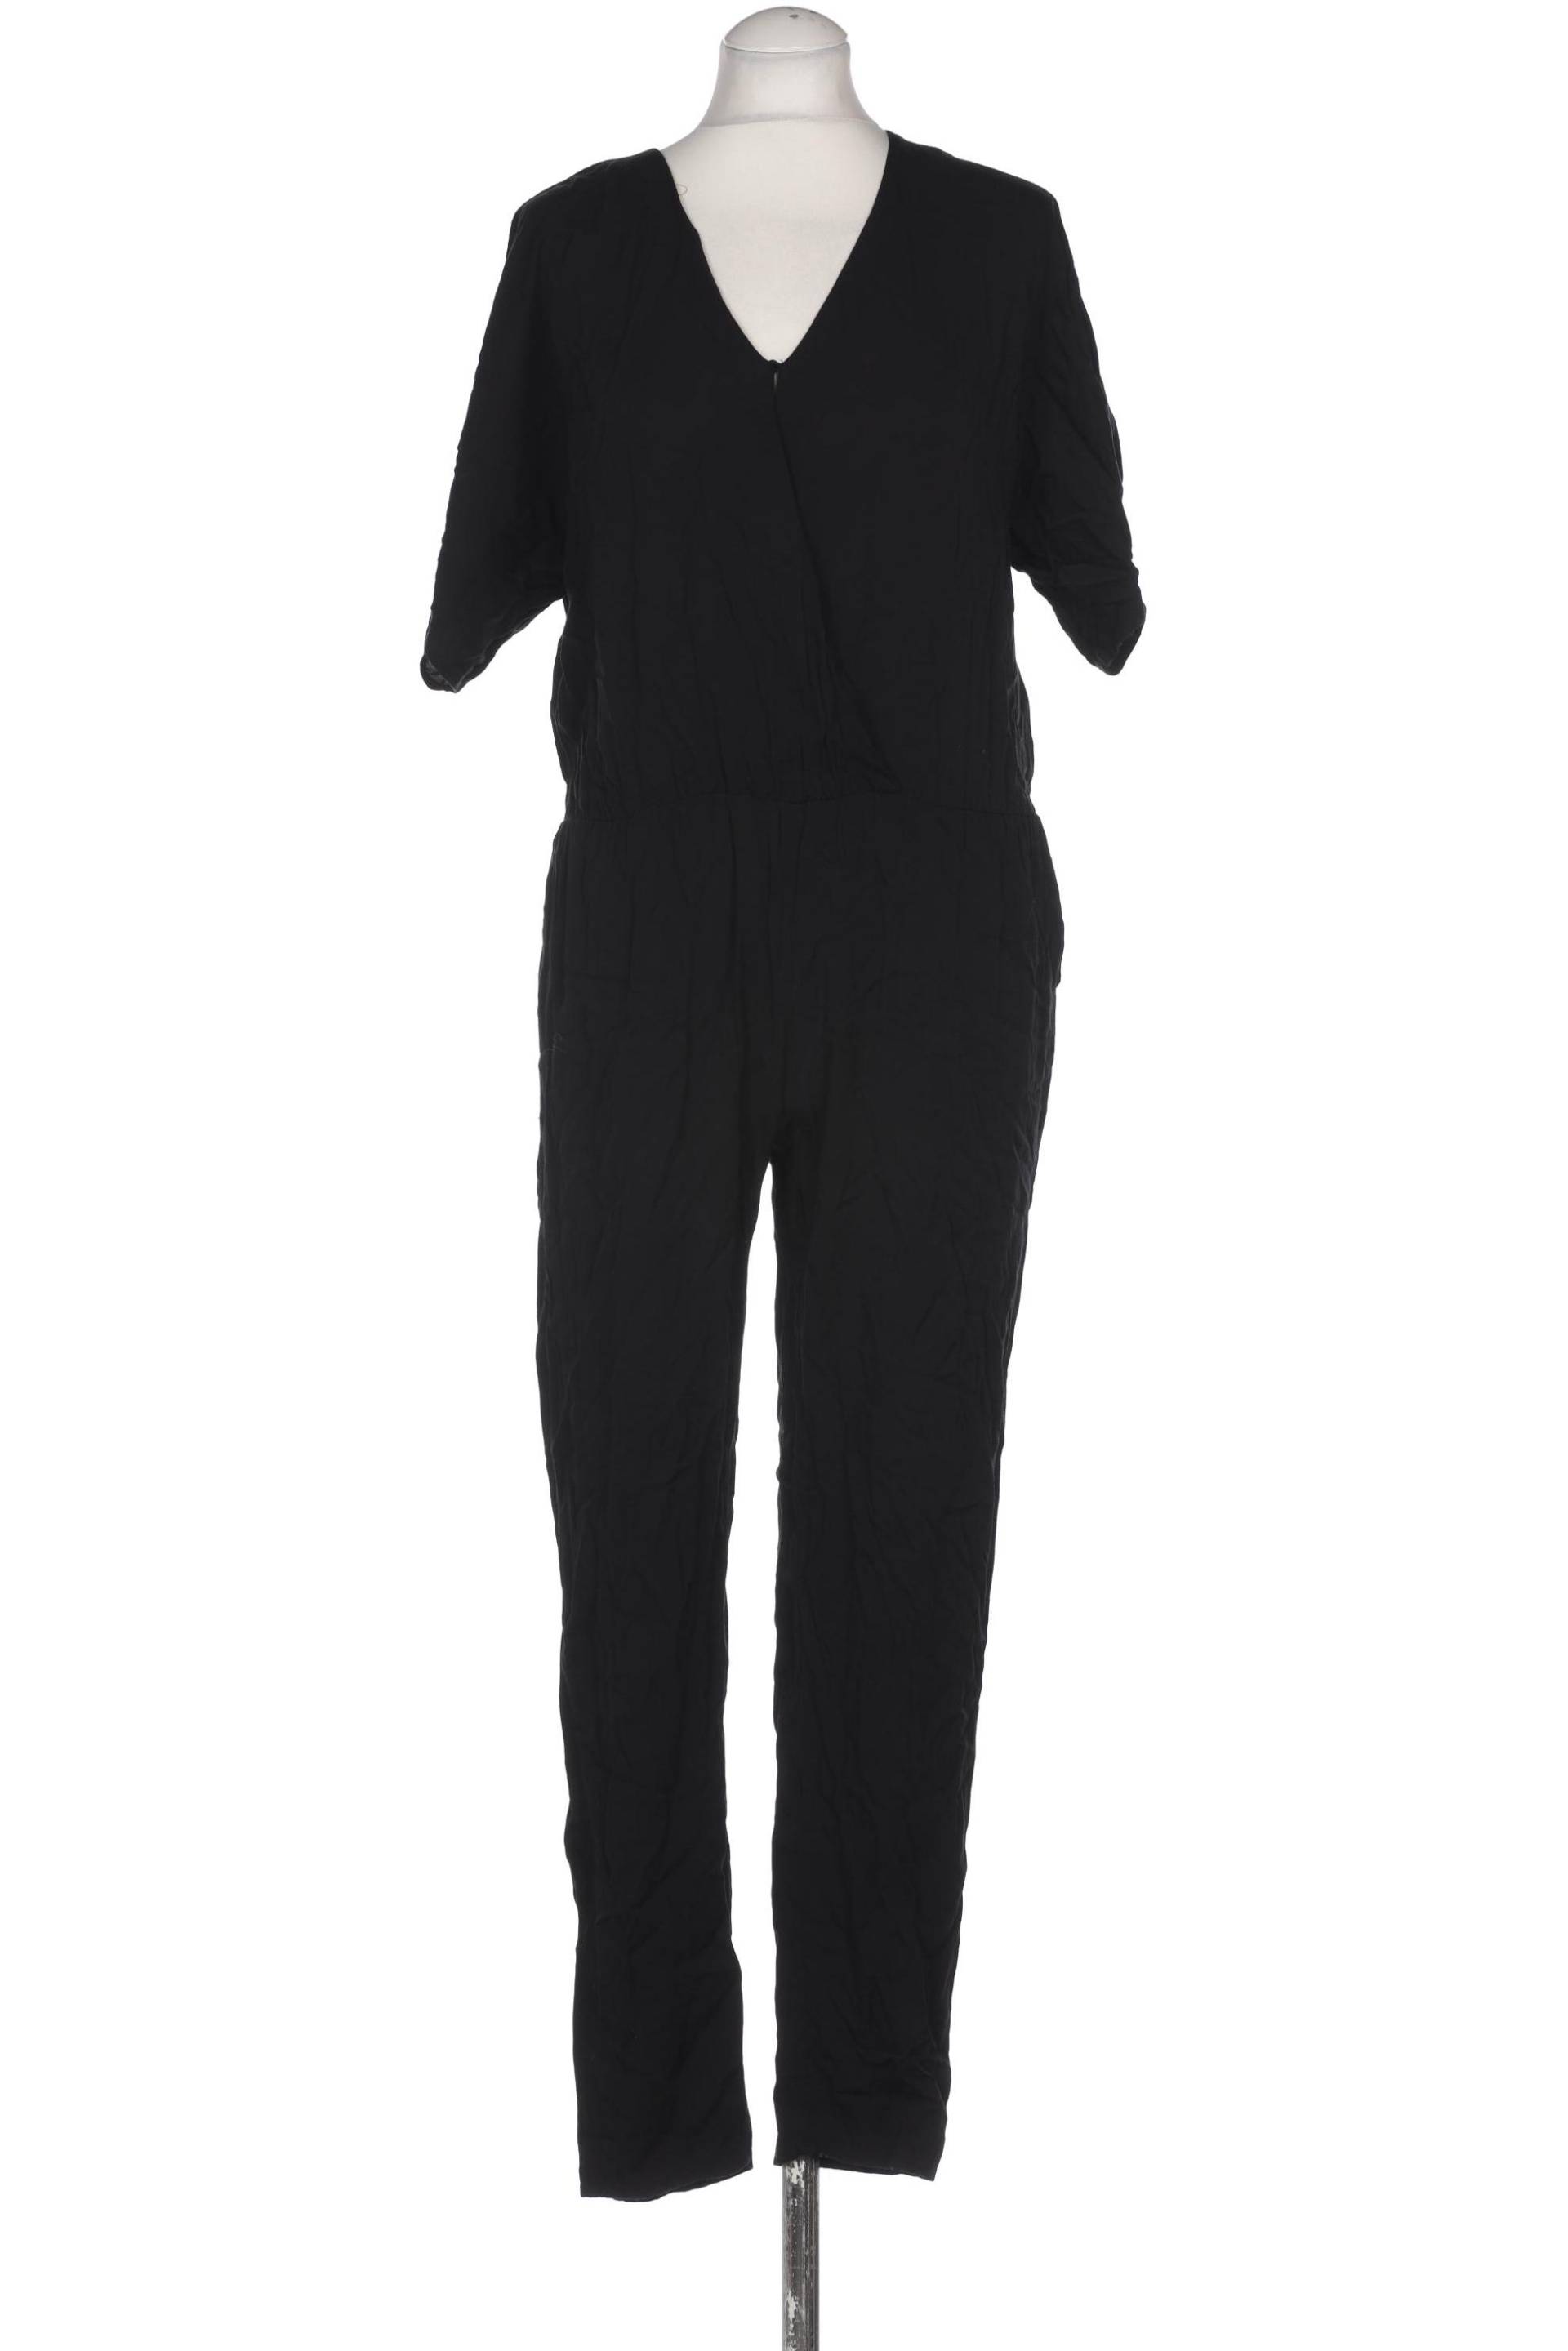 Hallhuber Damen Jumpsuit/Overall, schwarz, Gr. 34 von Hallhuber